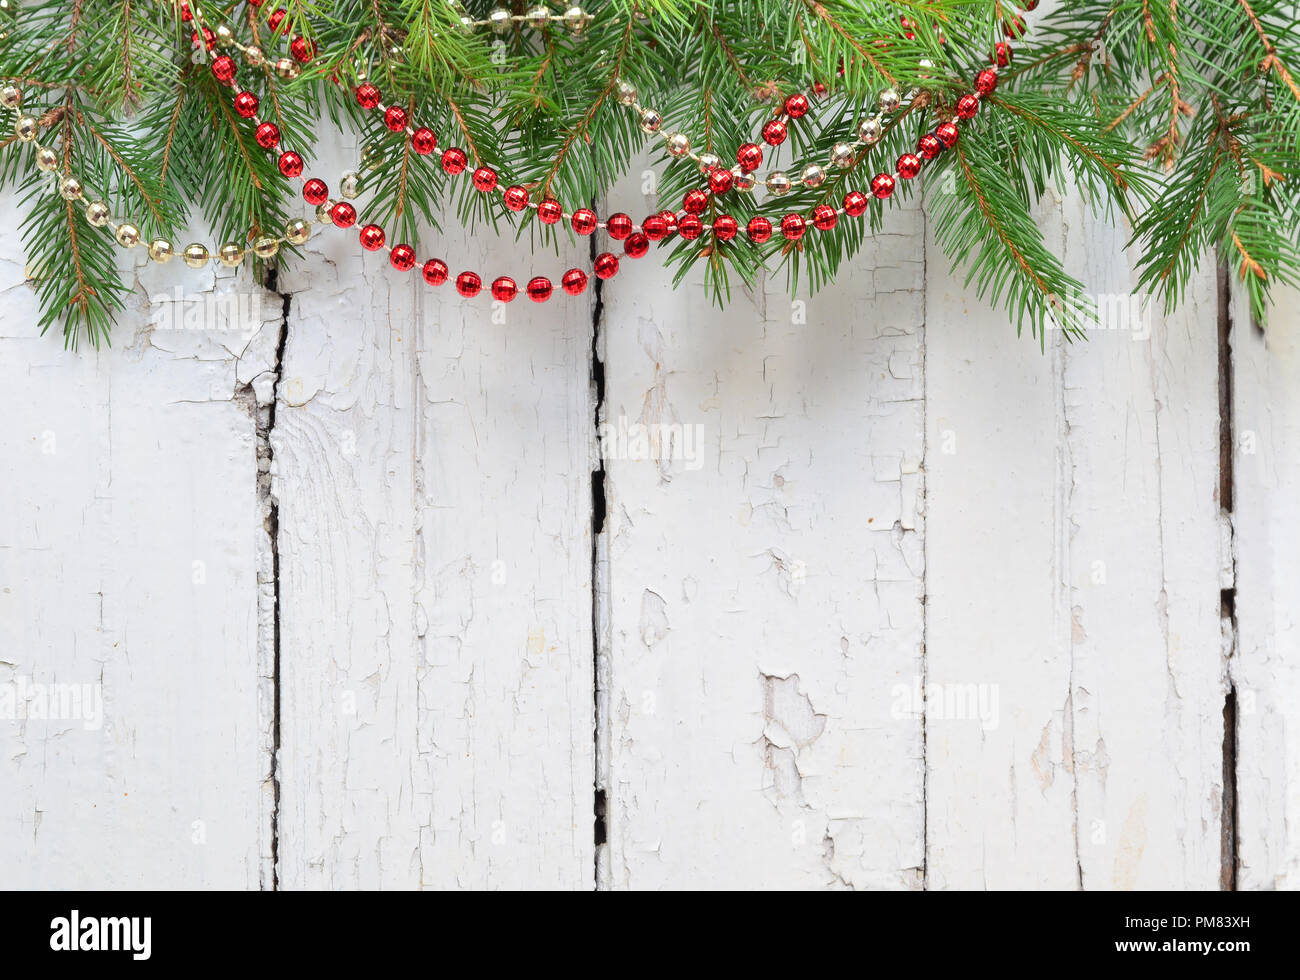 Weihnachten Tannenbaum mit Dekoration auf einem Holzbrett. Stockfoto